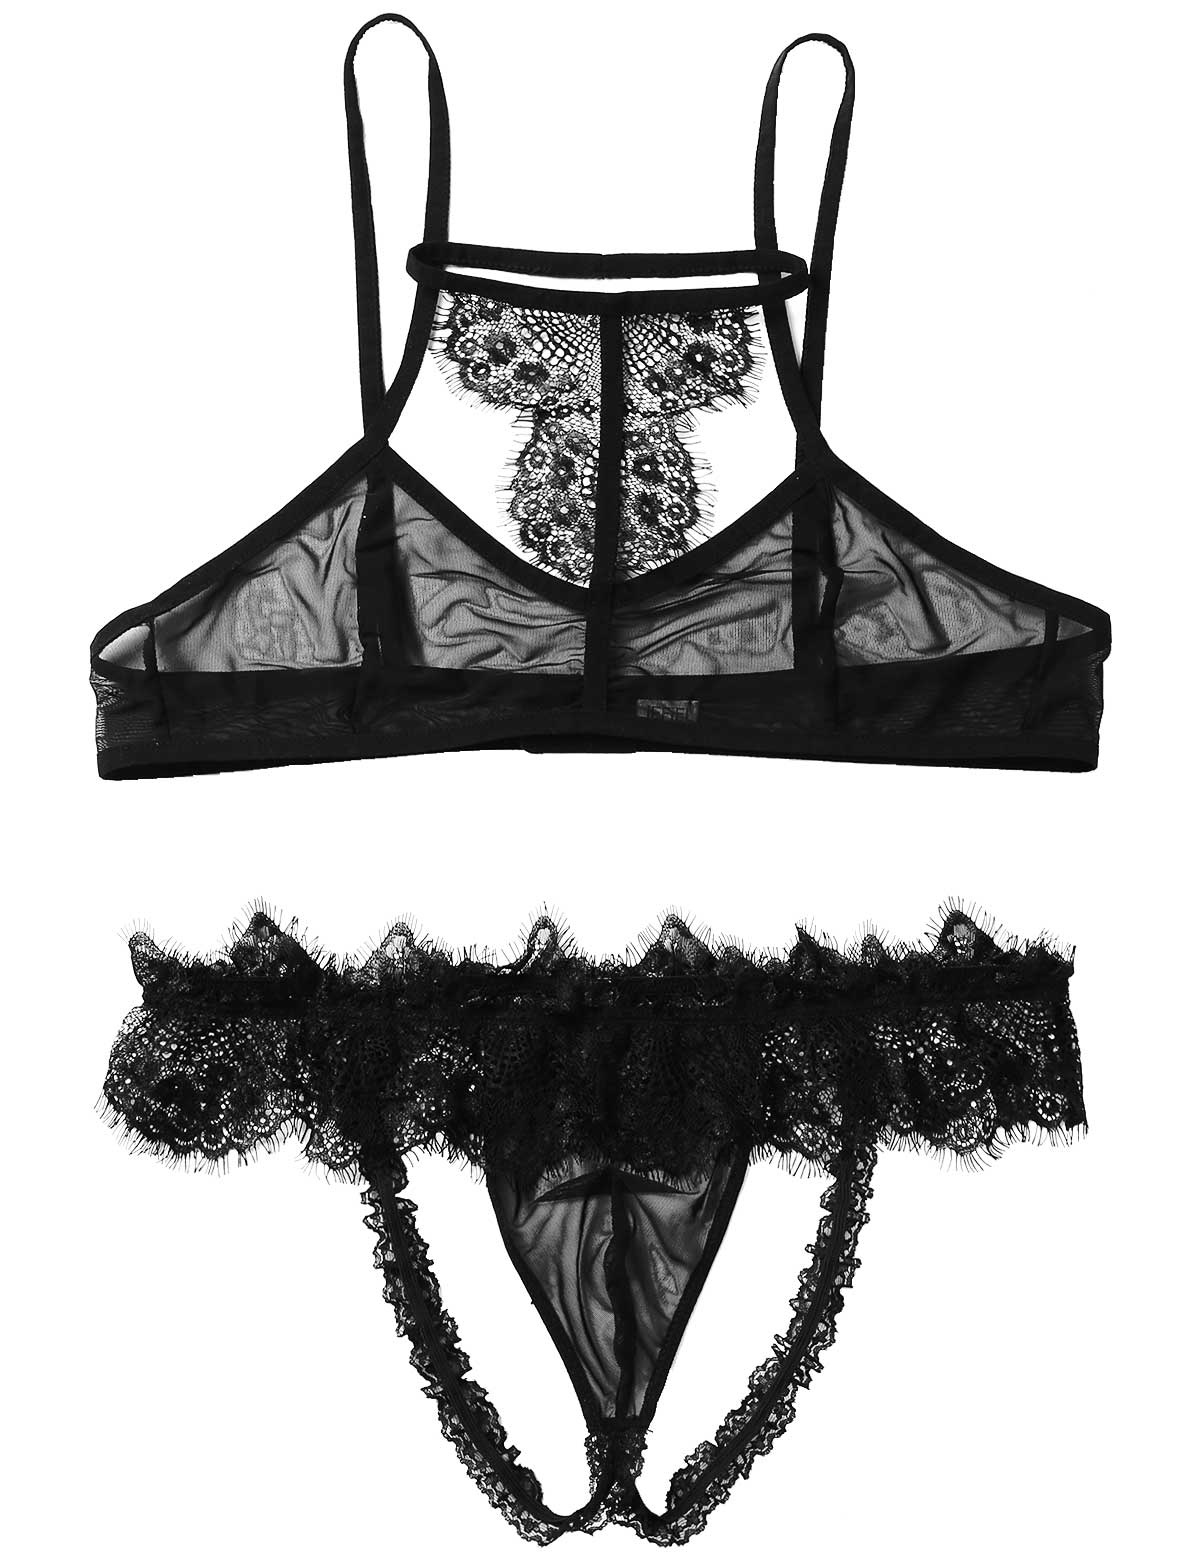 Black Lace Knickers See Through Erotic Panties Sheer Panties